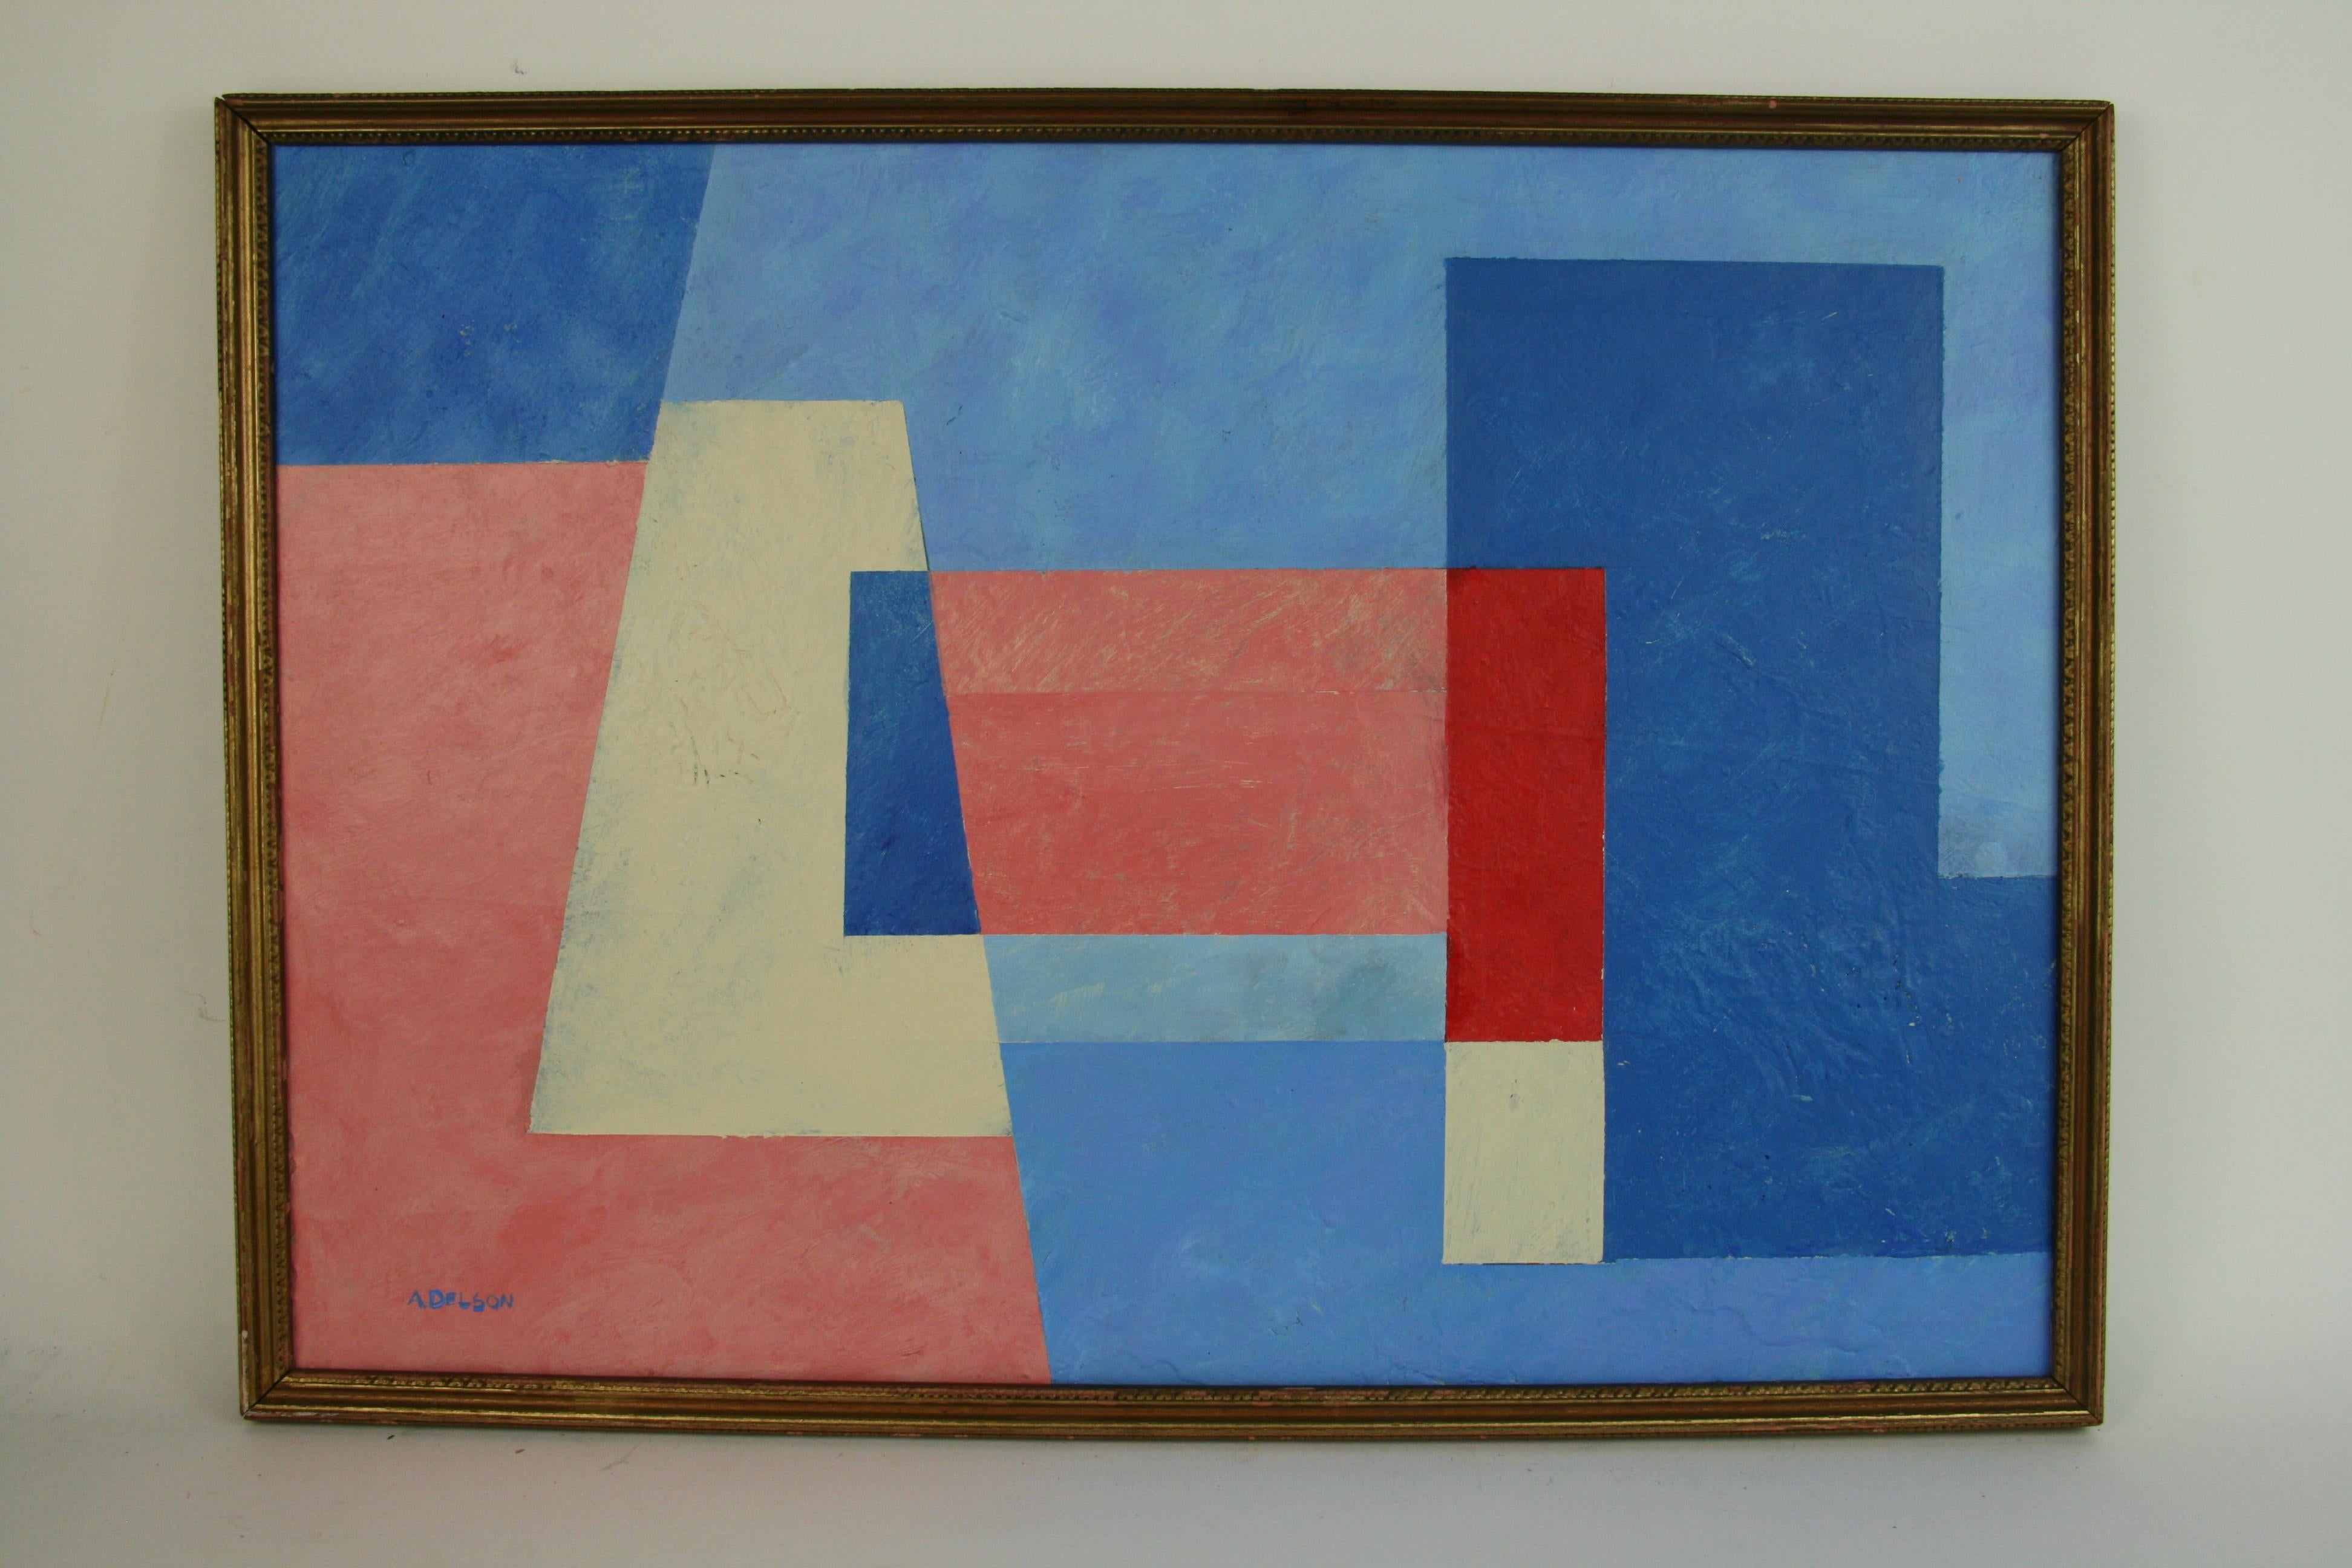 Blaues und weißes abstraktes kubisches – Painting von A.Delson